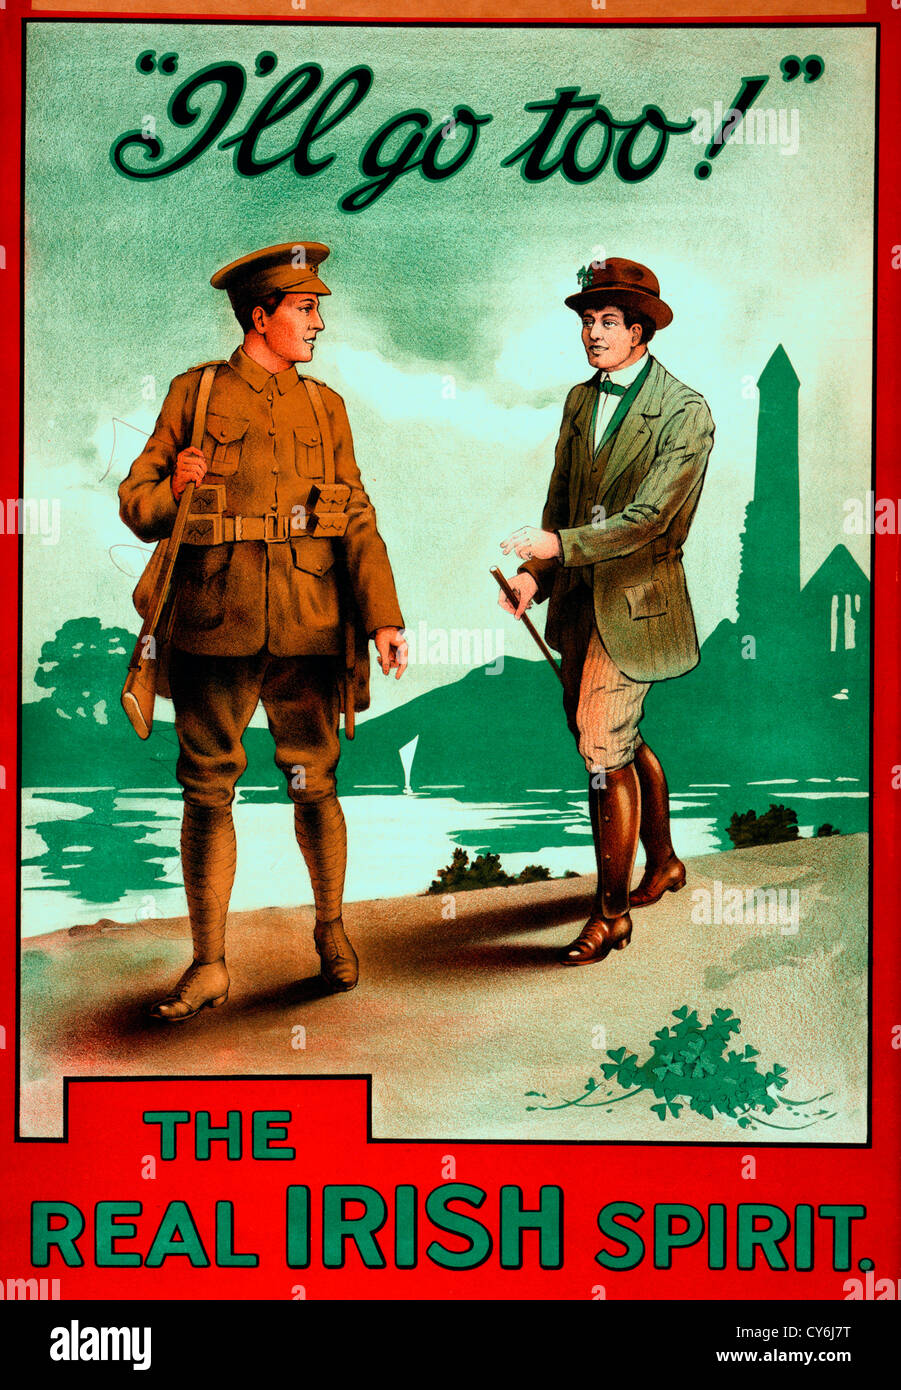 Ich werde gehen zu - The Real Irish Spirit - Plakat zeigt einen Mann in grün, mit Kleeblätter in seinen Hut und zu seinen Füßen gekleidet Adressierung ein Soldaten. WWI-Plakat Stockfoto